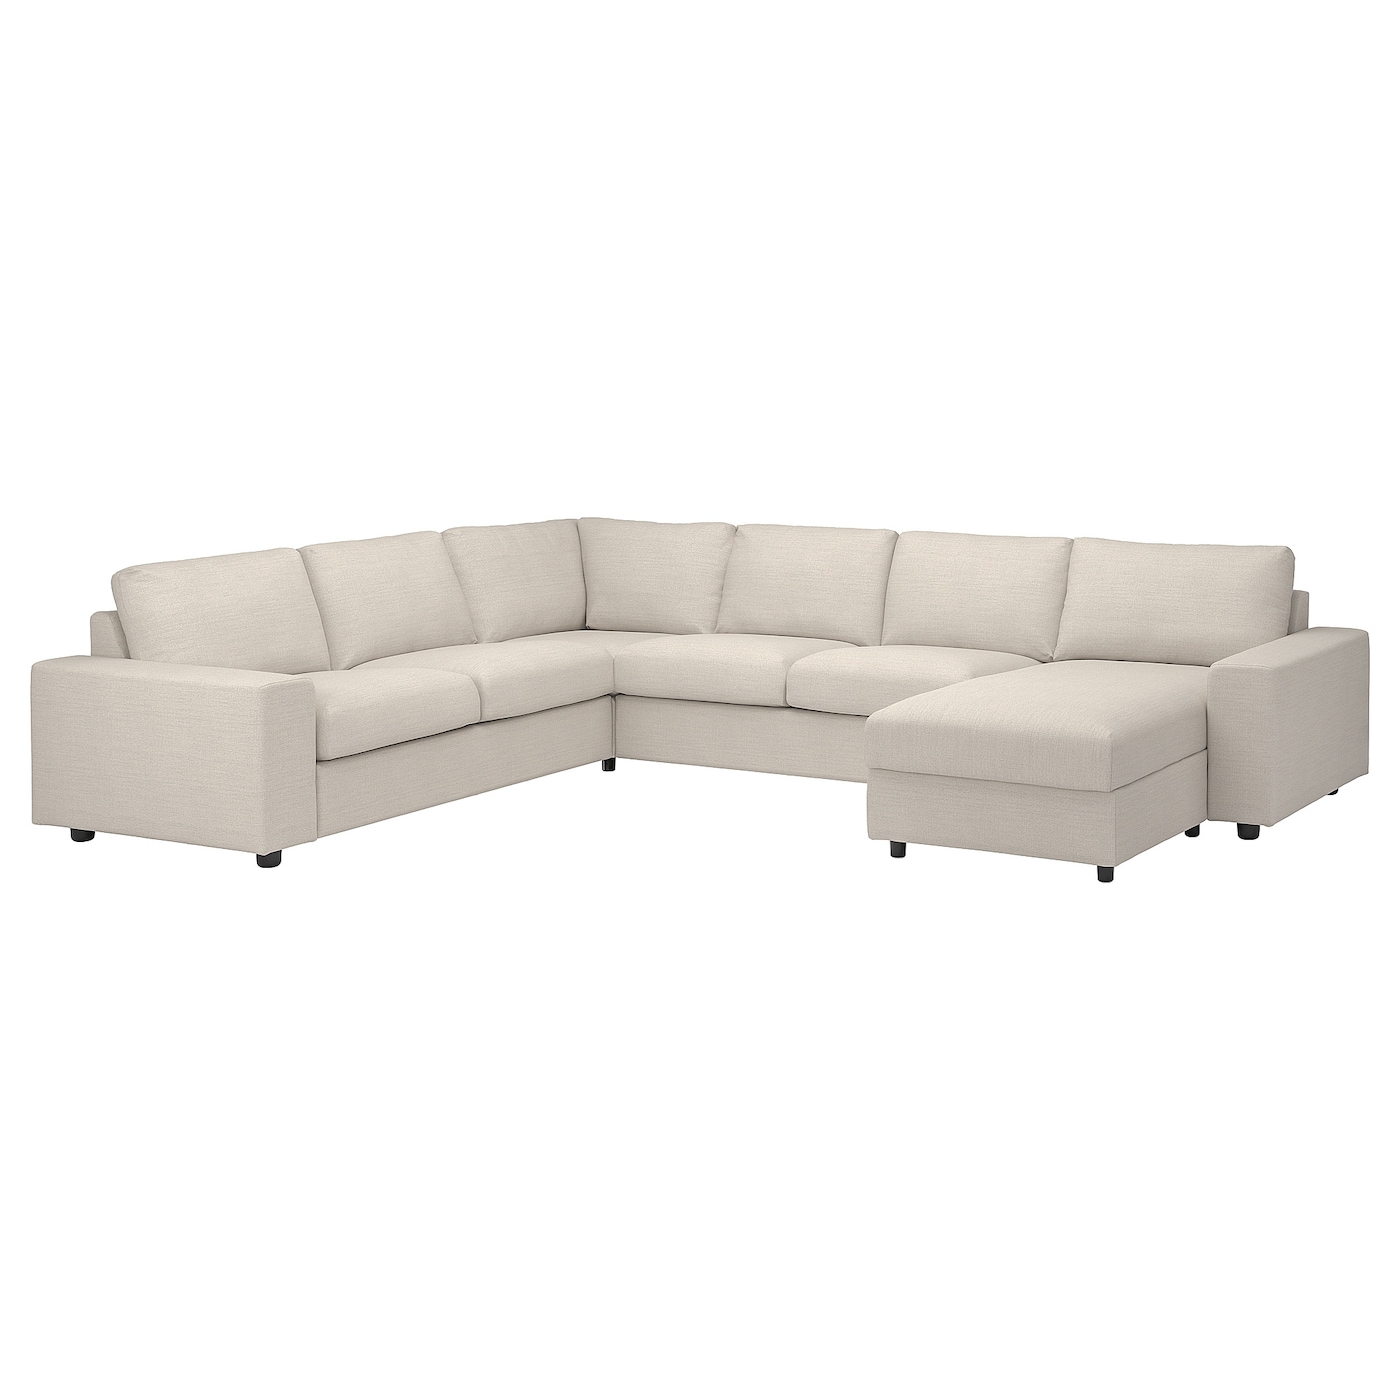 американский ретро диван европейский одноместный диван диван бар офисный диван для кофейни ВИМЛЕ Диван угловой, 5-местный. диван+диван, с широкими подлокотниками/Гуннаред бежевый VIMLE IKEA